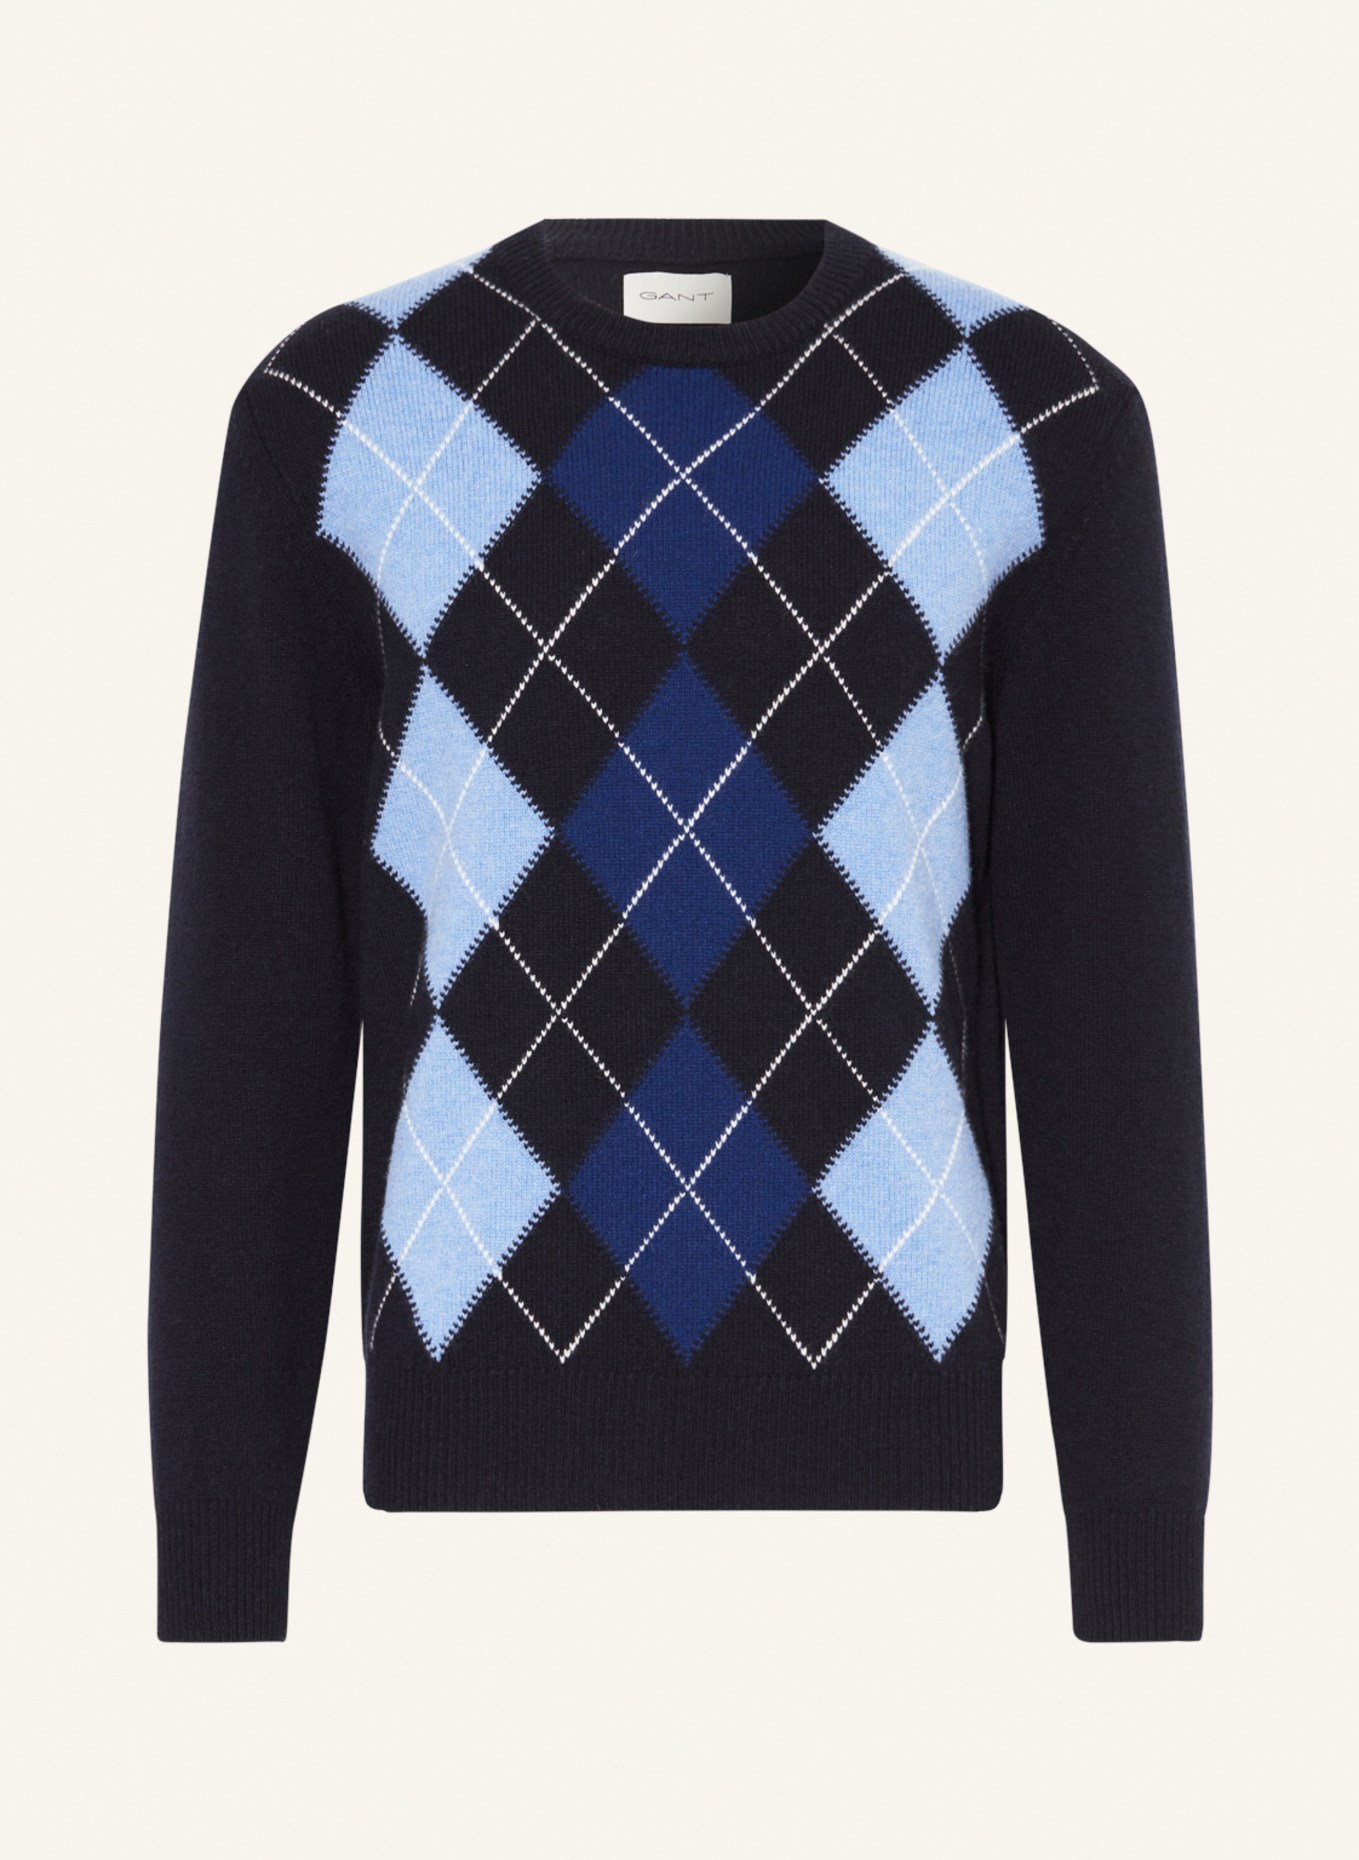 GANT Sweater, Color: DARK BLUE/ BLACK/ LIGHT BLUE (Image 1)